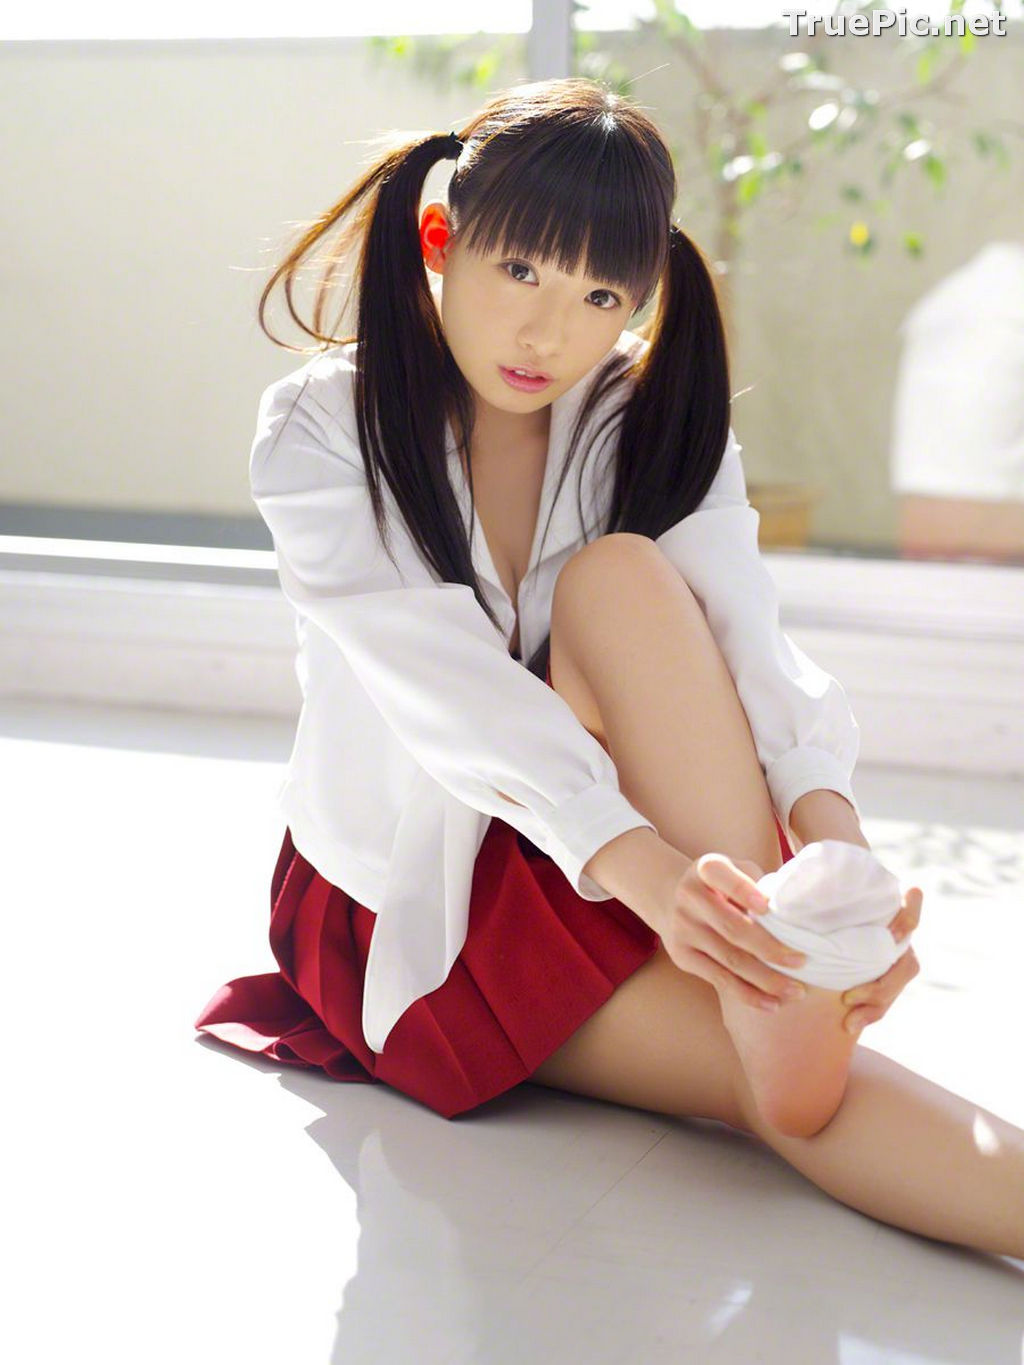 Image Wanibooks No.133 - Japanese Model and Singer - Hikari Shiina - TruePic.net - Picture-91